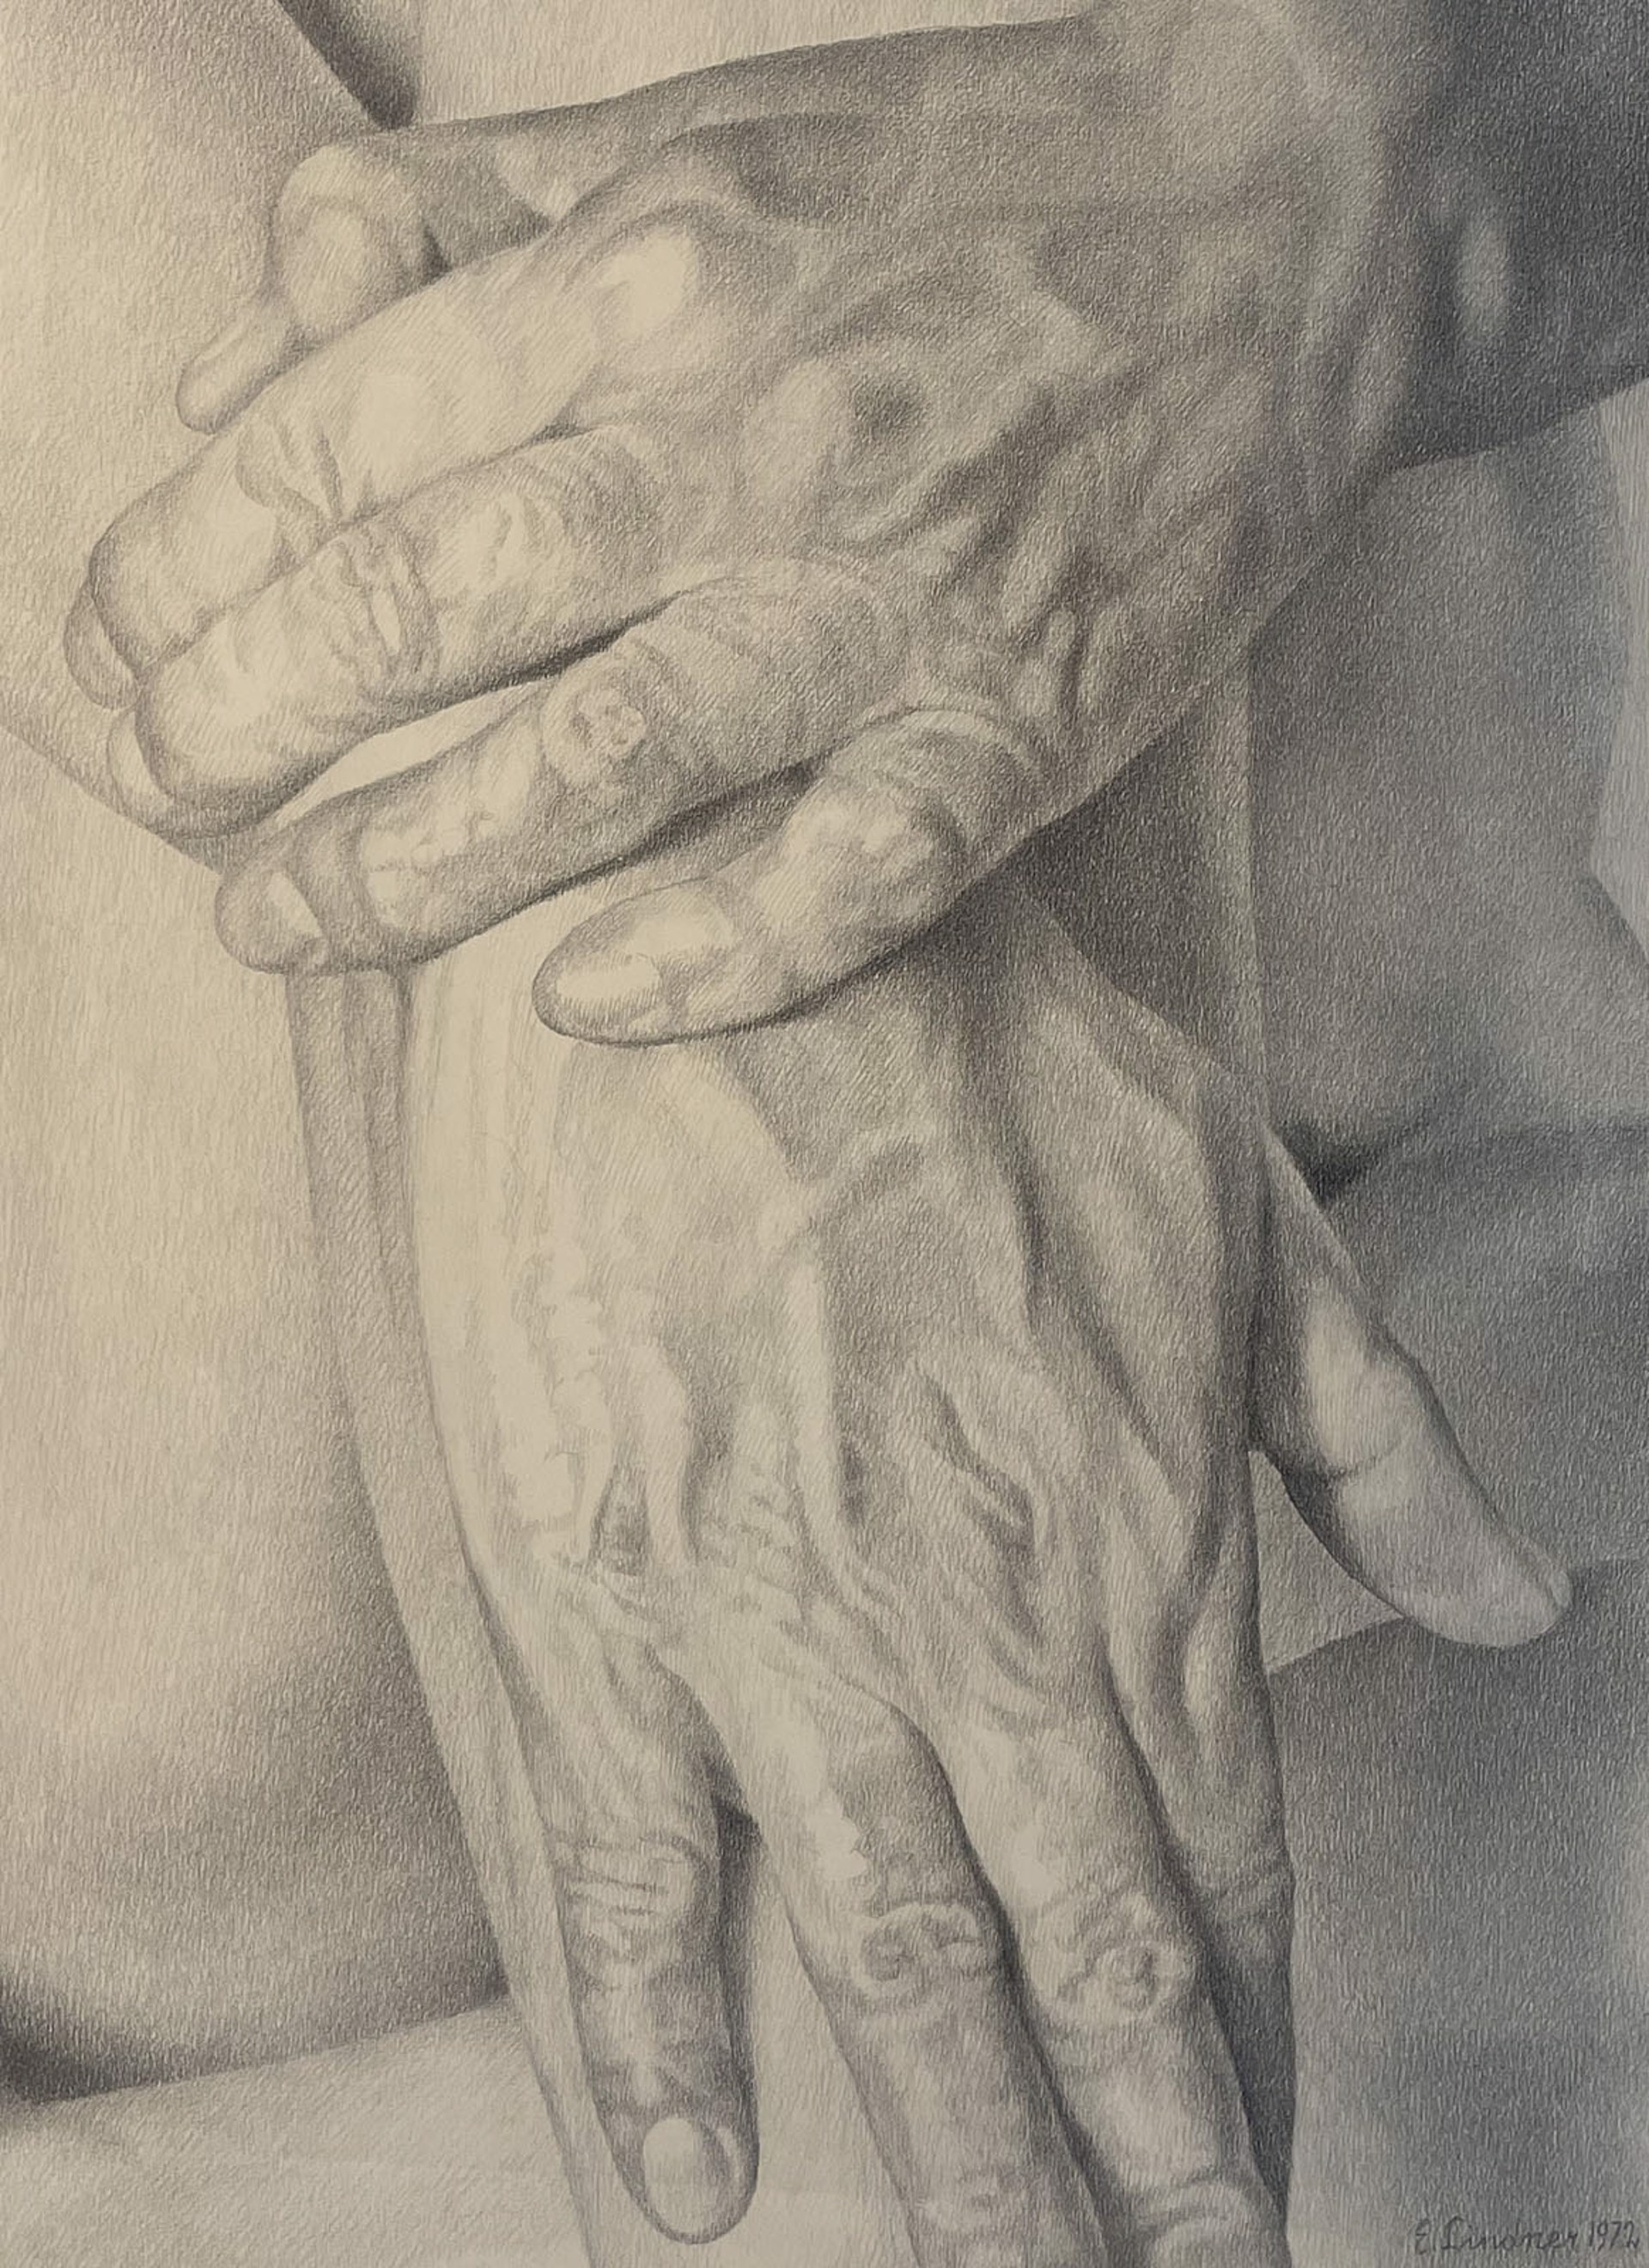 Hands by Ernest Lindner (1897-1988)